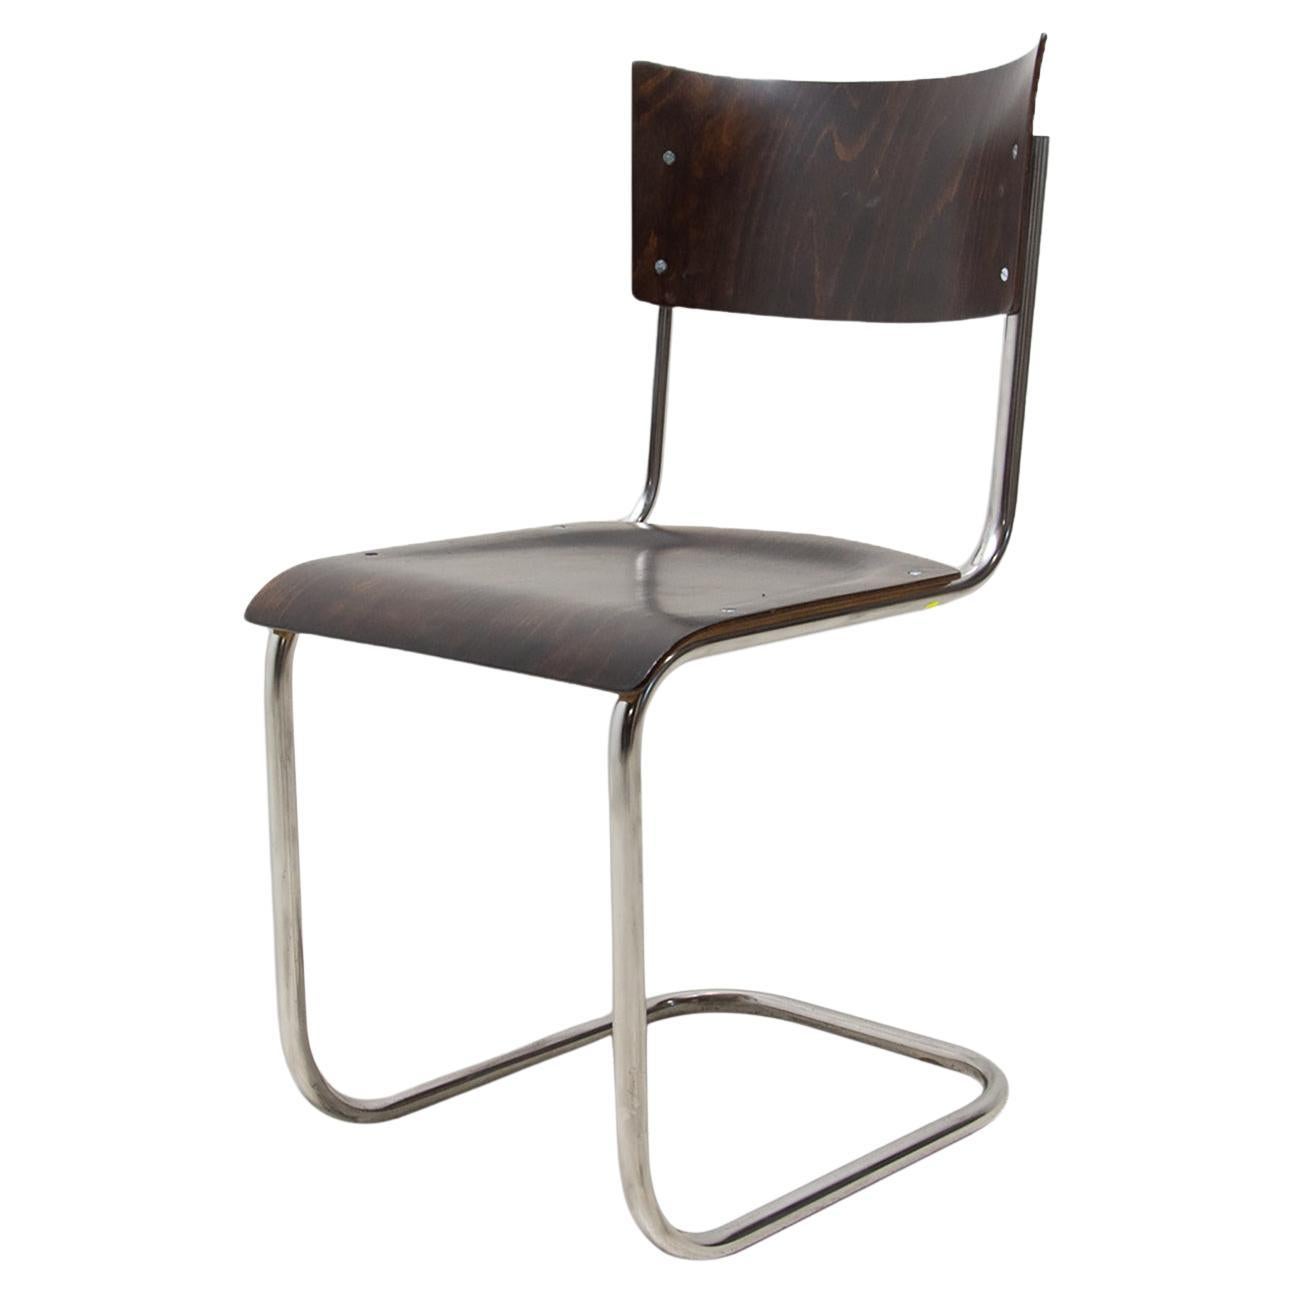 Bauhaus-Stuhl S43 von Mart Stam, 1930er Jahre